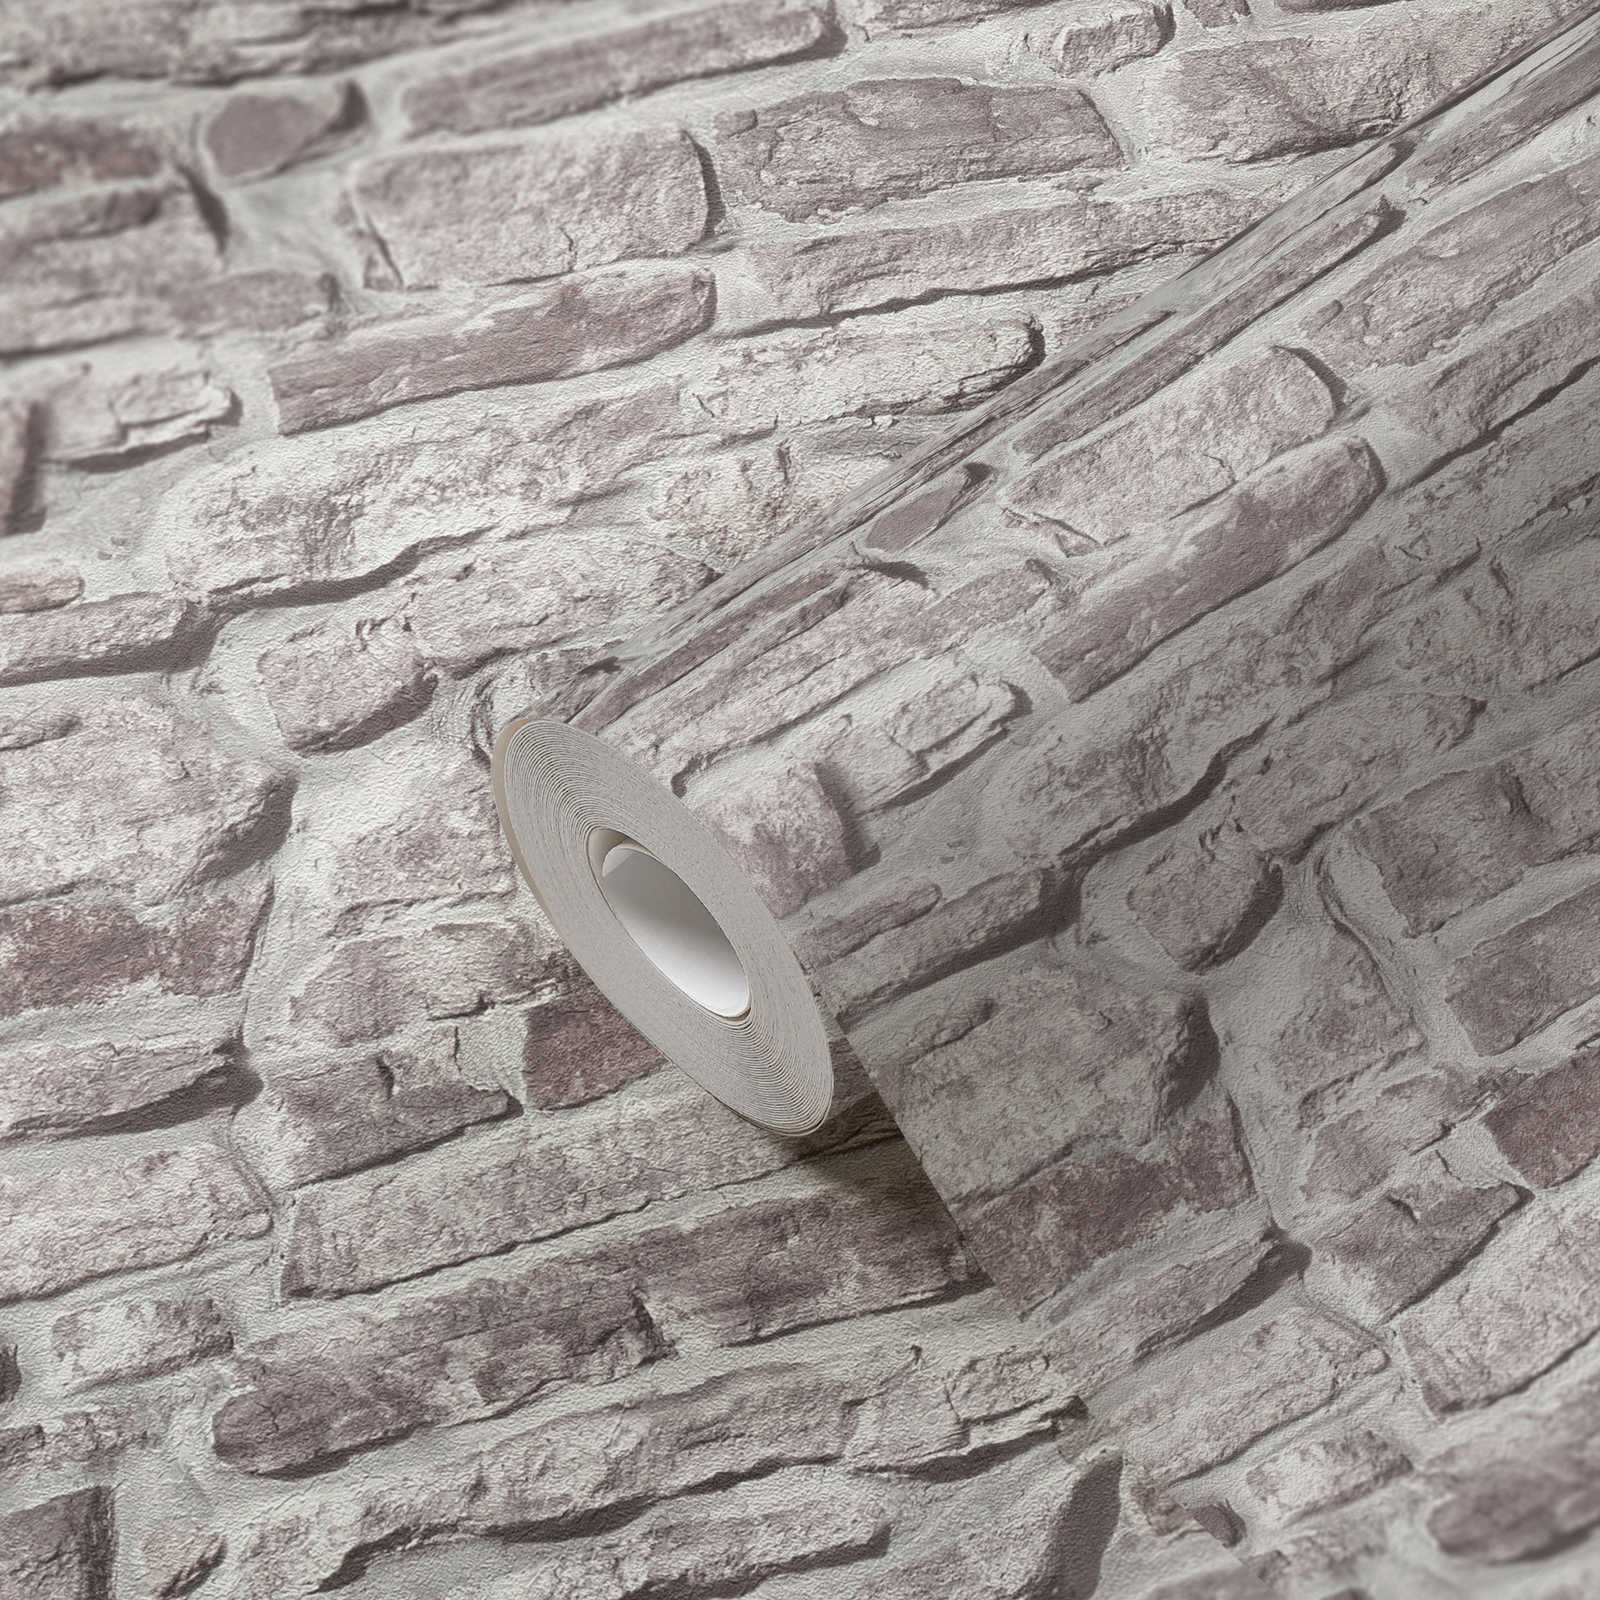             Steinoptik Vliestapete natürliche Maueroptik – Grau, Grau, Weiß
        